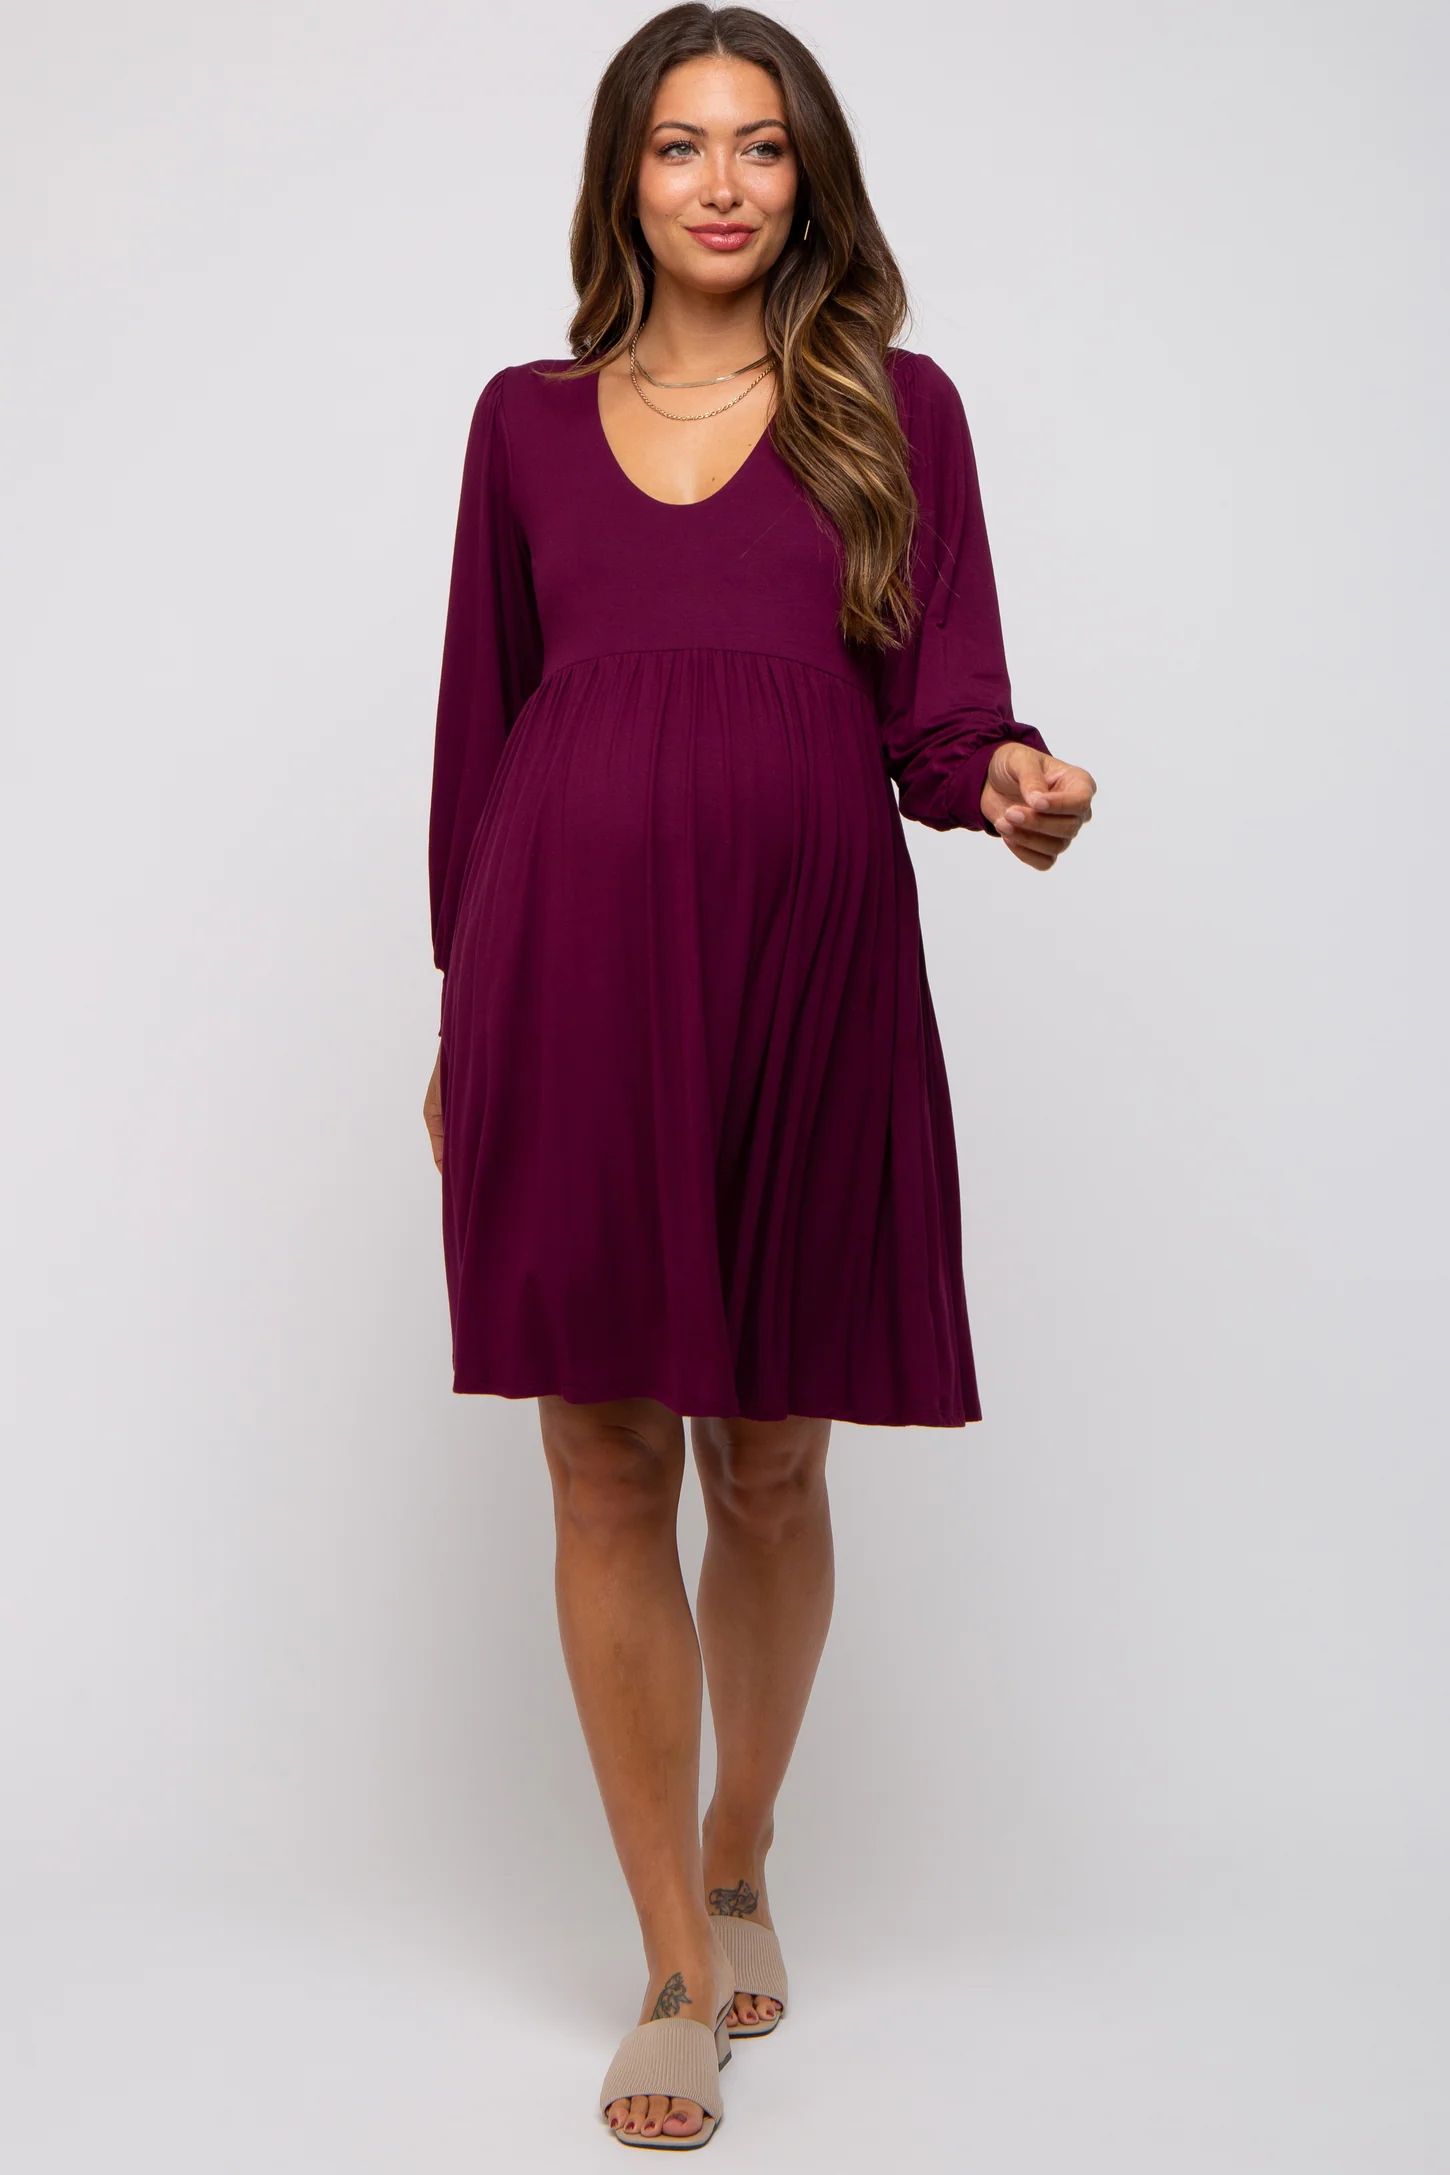 Burgundy Long Puff Sleeve Maternity Dress | PinkBlush Maternity